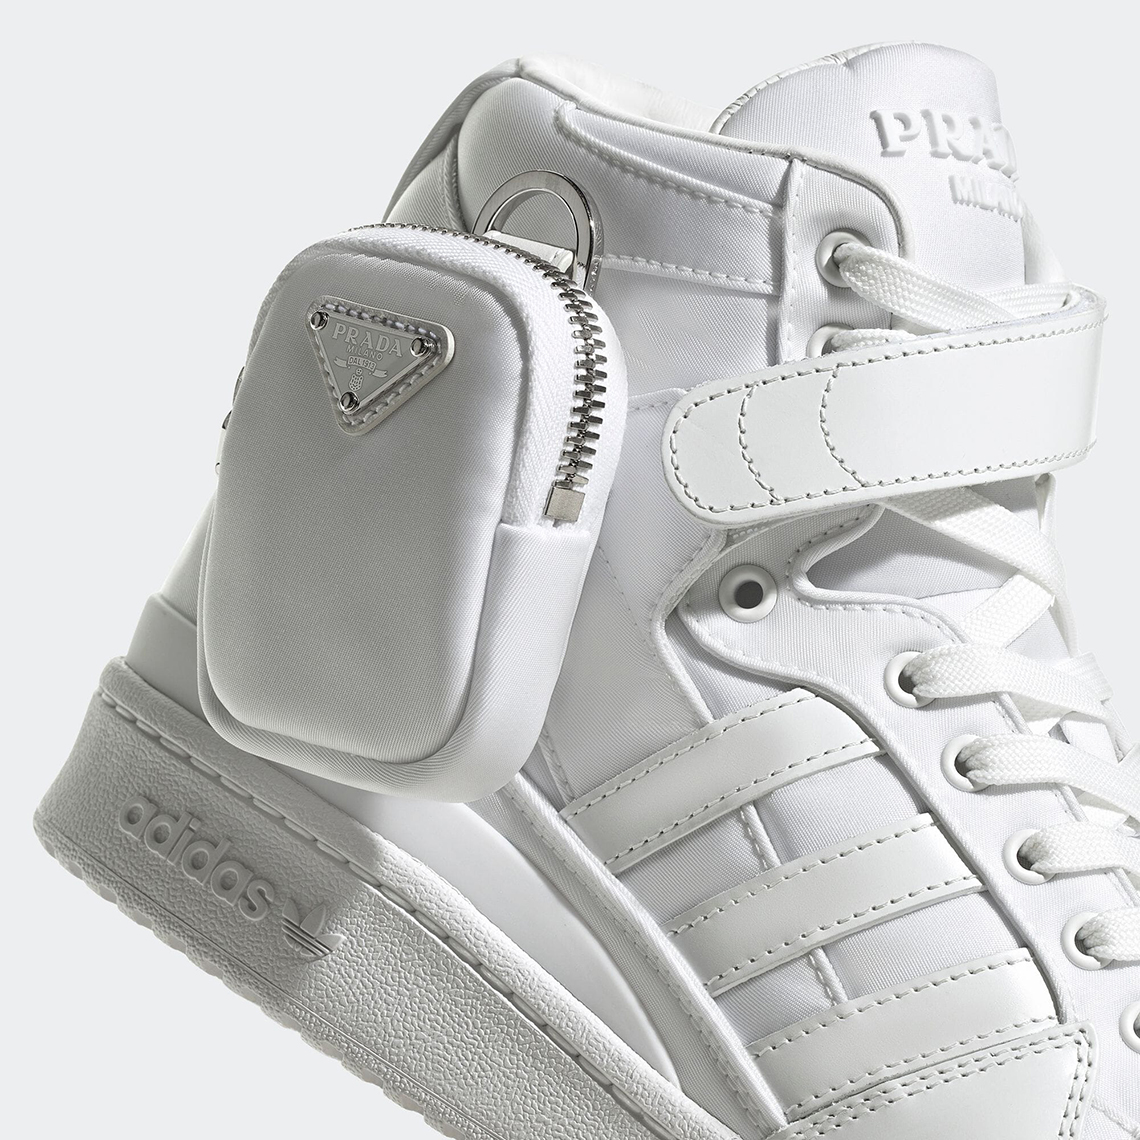 Prada For Adidas Forum Hi Re Nylon Core White Gy7041 2